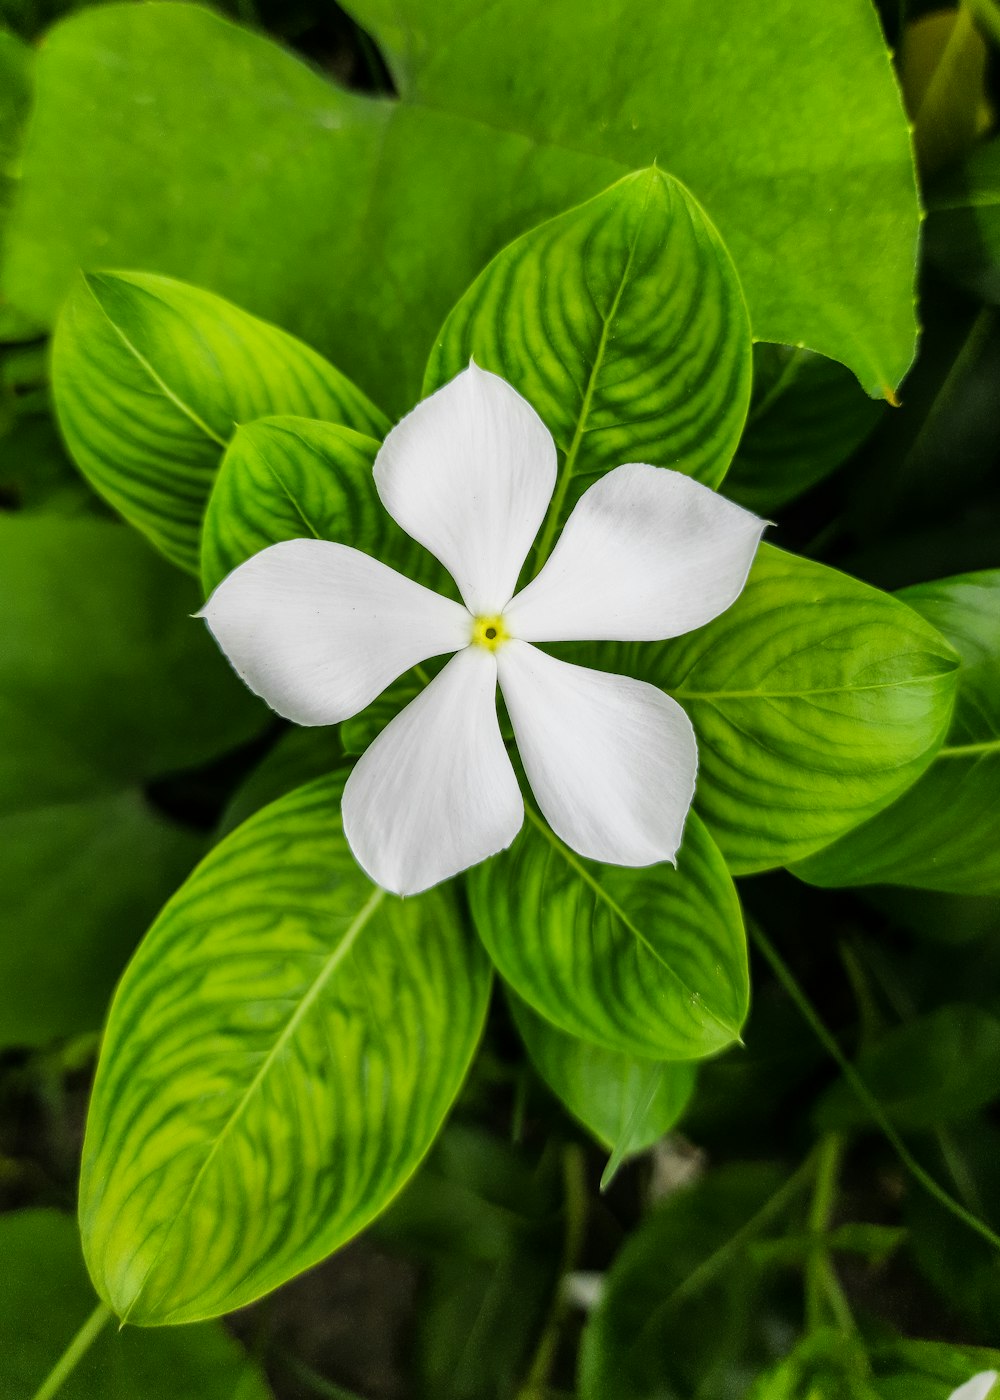 昼間に咲く白い 5 枚の花弁の花の写真 – Unsplashの無料ラクナウ写真